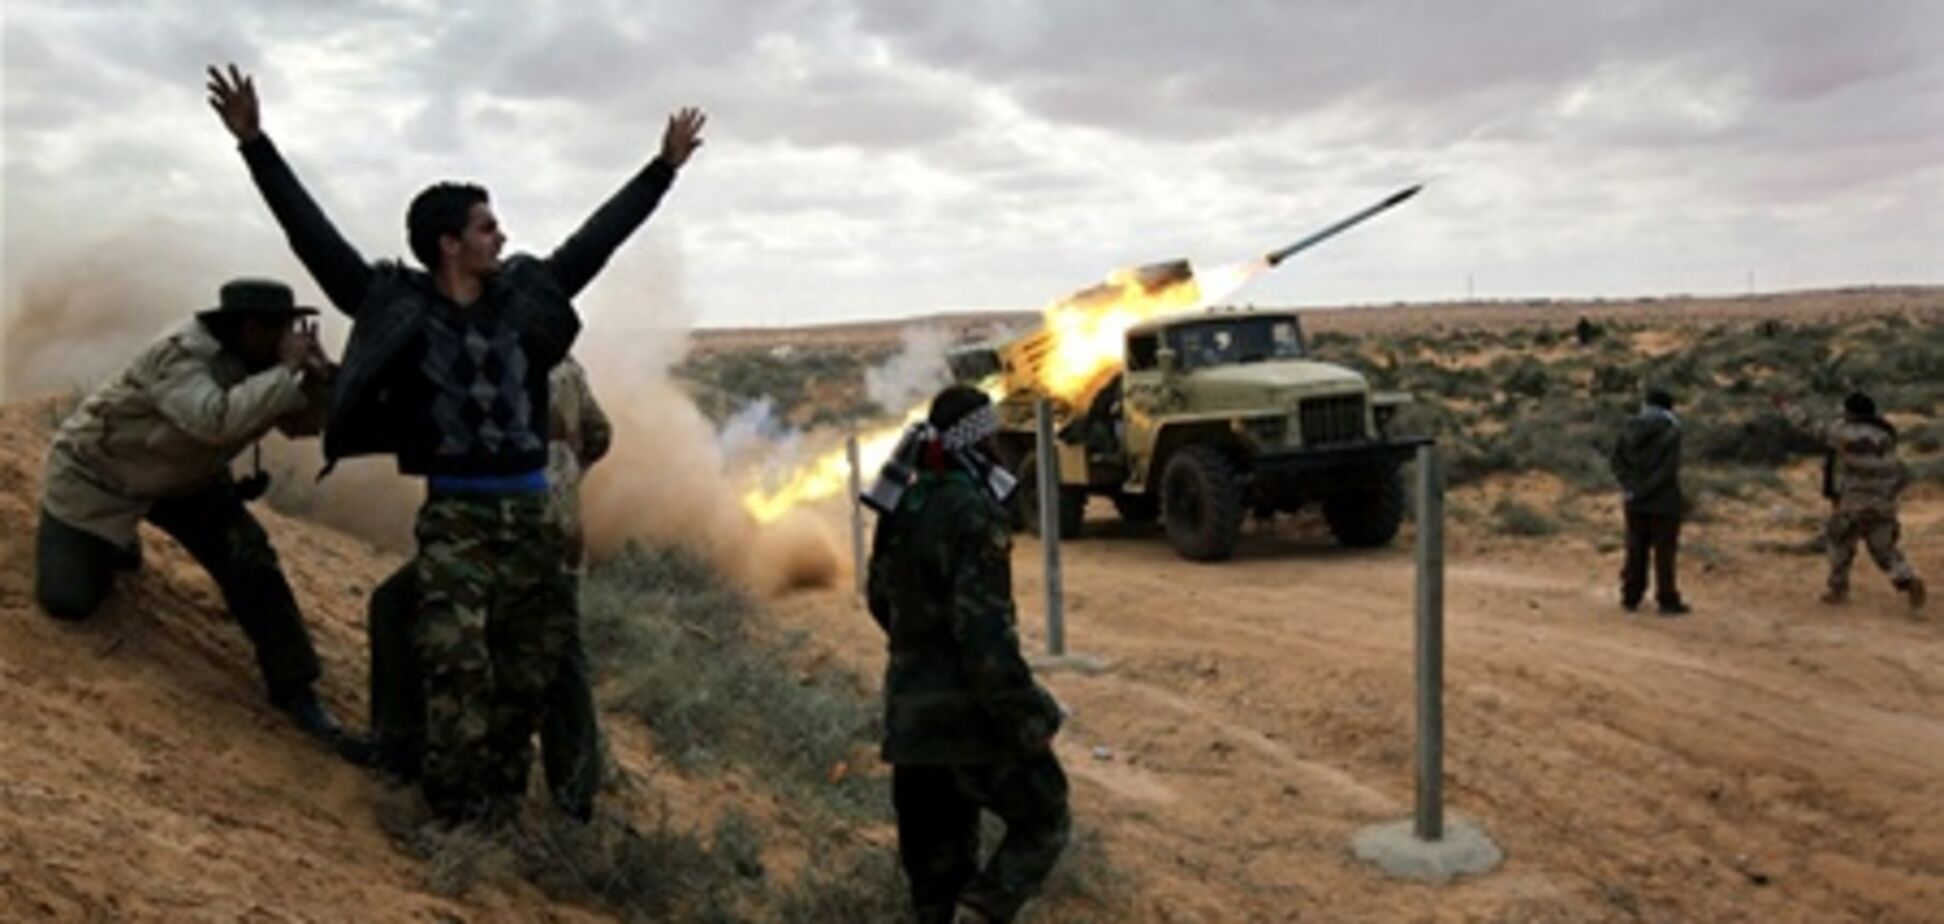 Високотехнологічна війна в Лівії обійдеться в $ 1 млрд